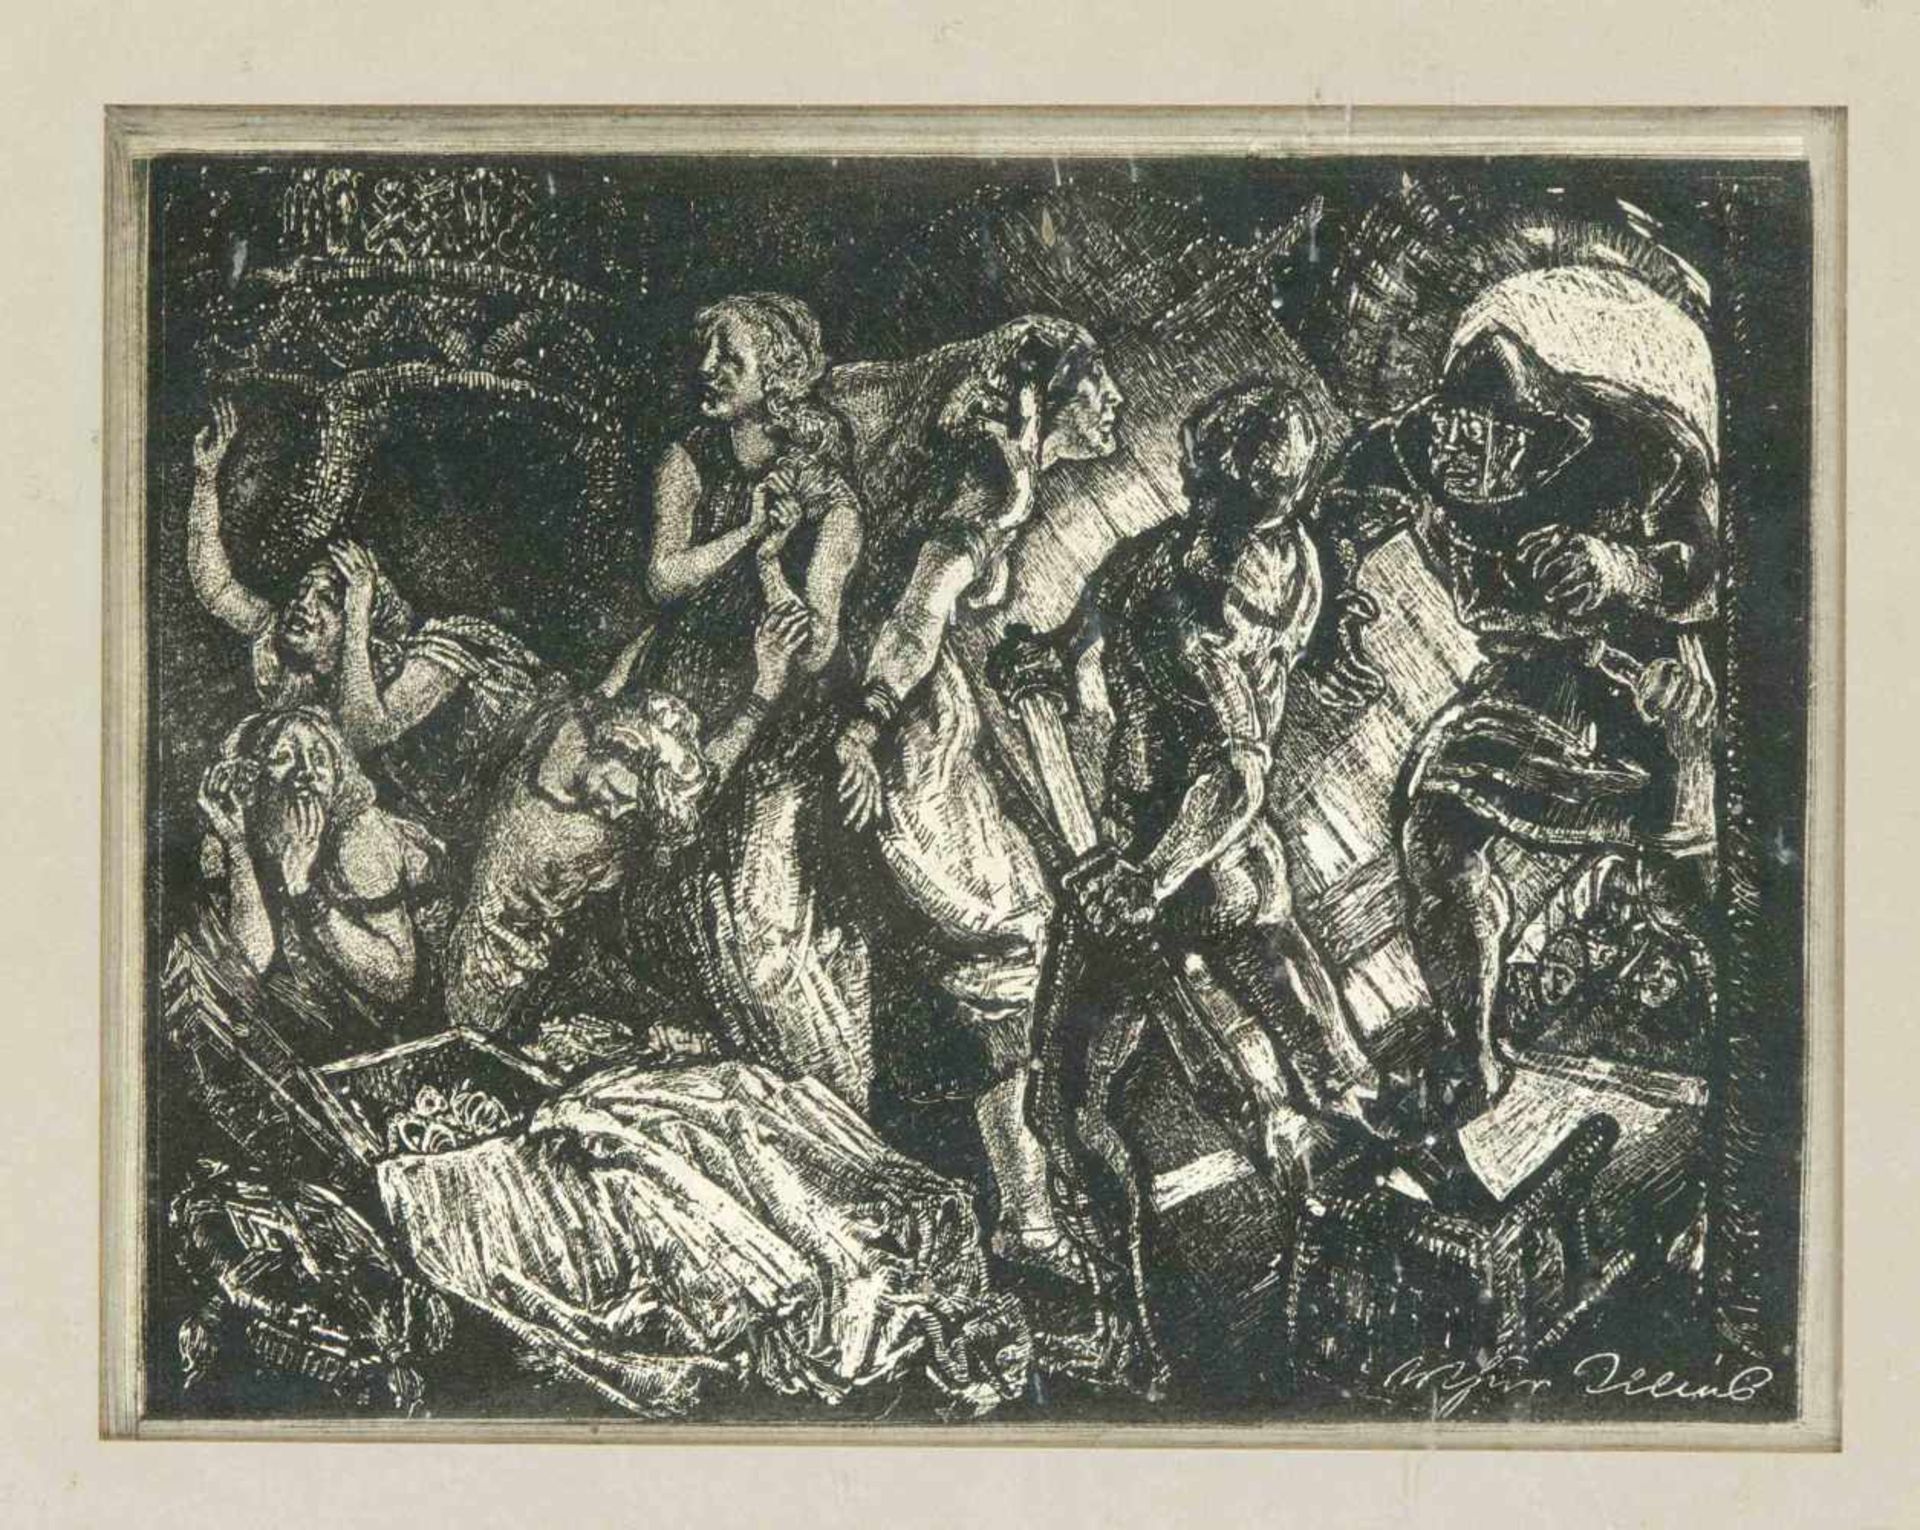 Arthur Illies (1870-1952), Konvolut von 2 illustrativen Lithographien: Reiter im Schneeund Überfall,